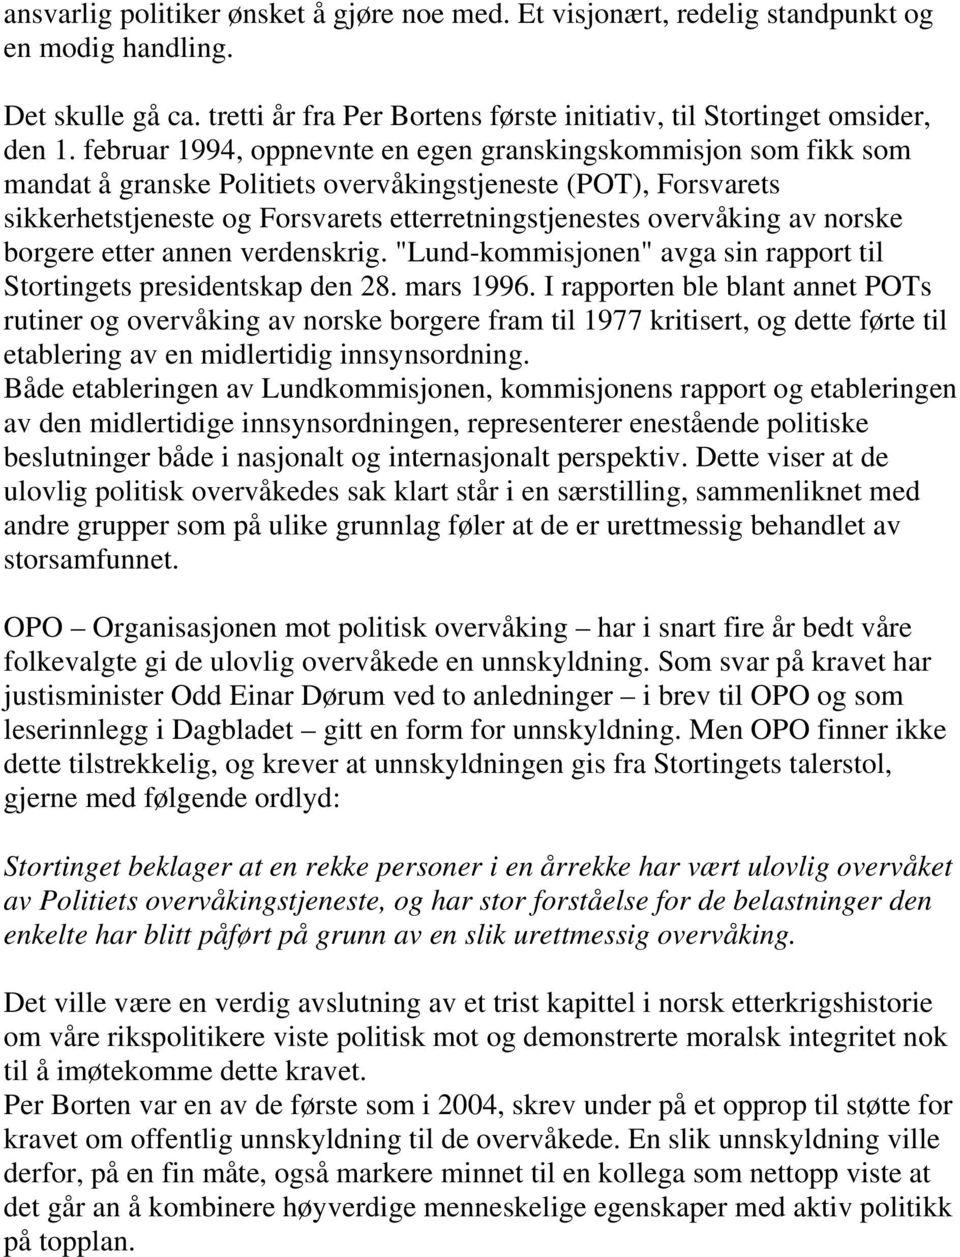 norske borgere etter annen verdenskrig. "Lund-kommisjonen" avga sin rapport til Stortingets presidentskap den 28. mars 1996.